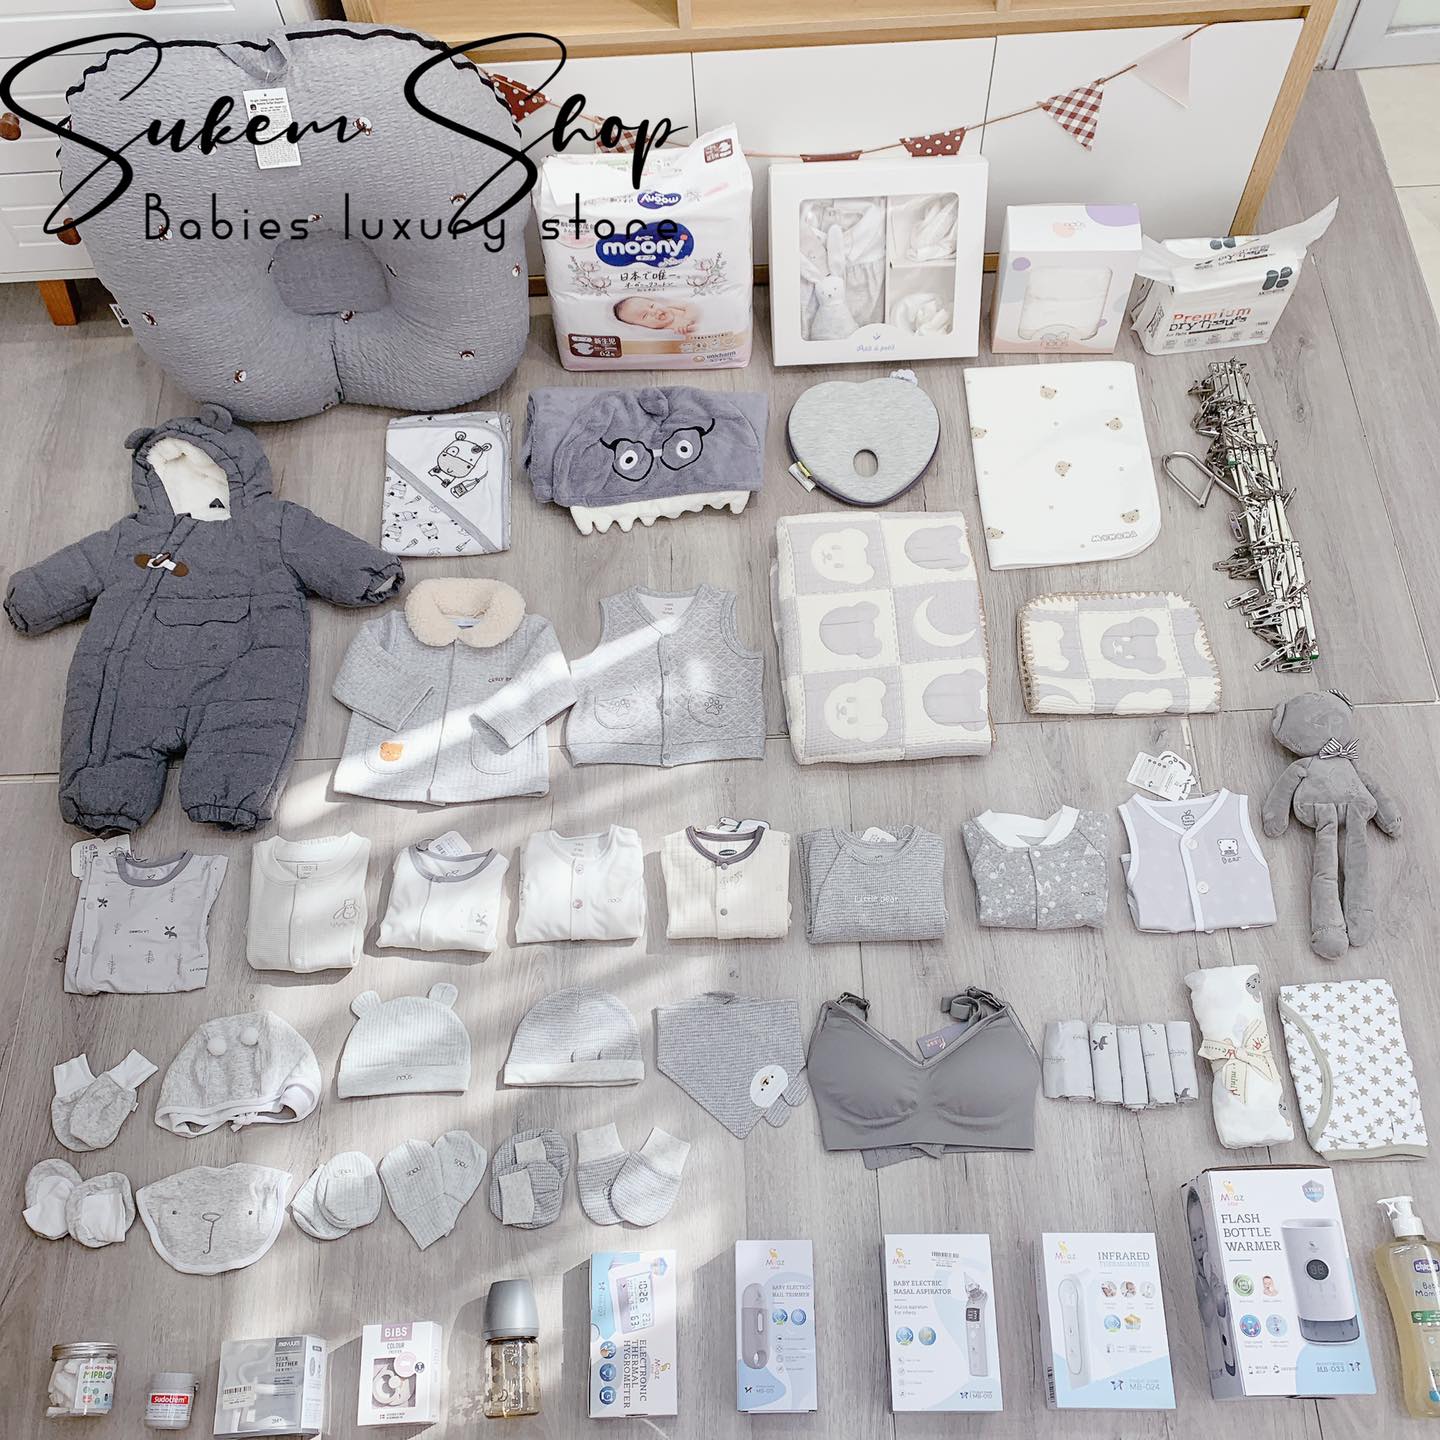 Sukem Shop - Chuyên đồ sơ sinh mẹ và bé ảnh 1